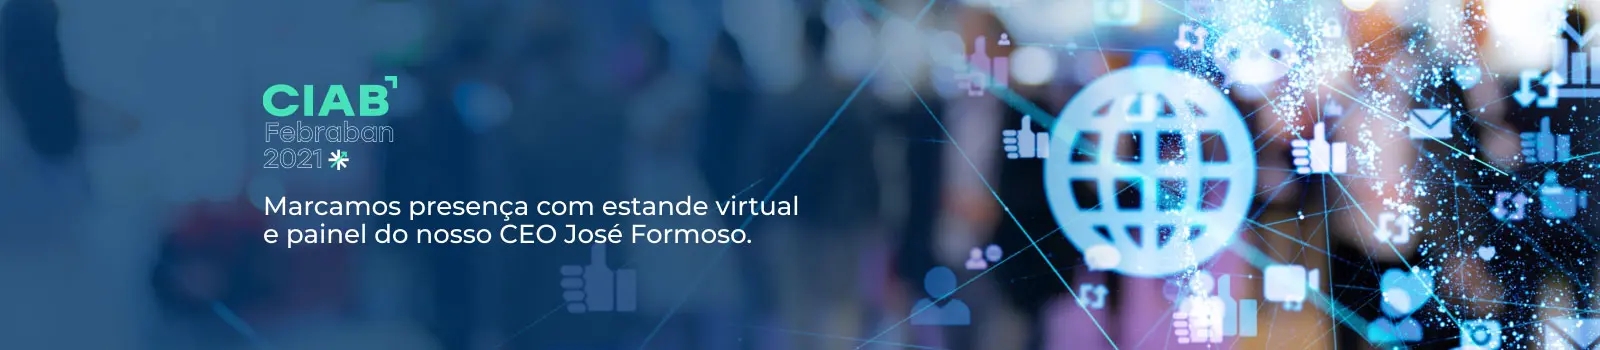 CIAB Febraban 2021 - Marcamos presença com estande virtual e painel do nosso CEO José Formoso.